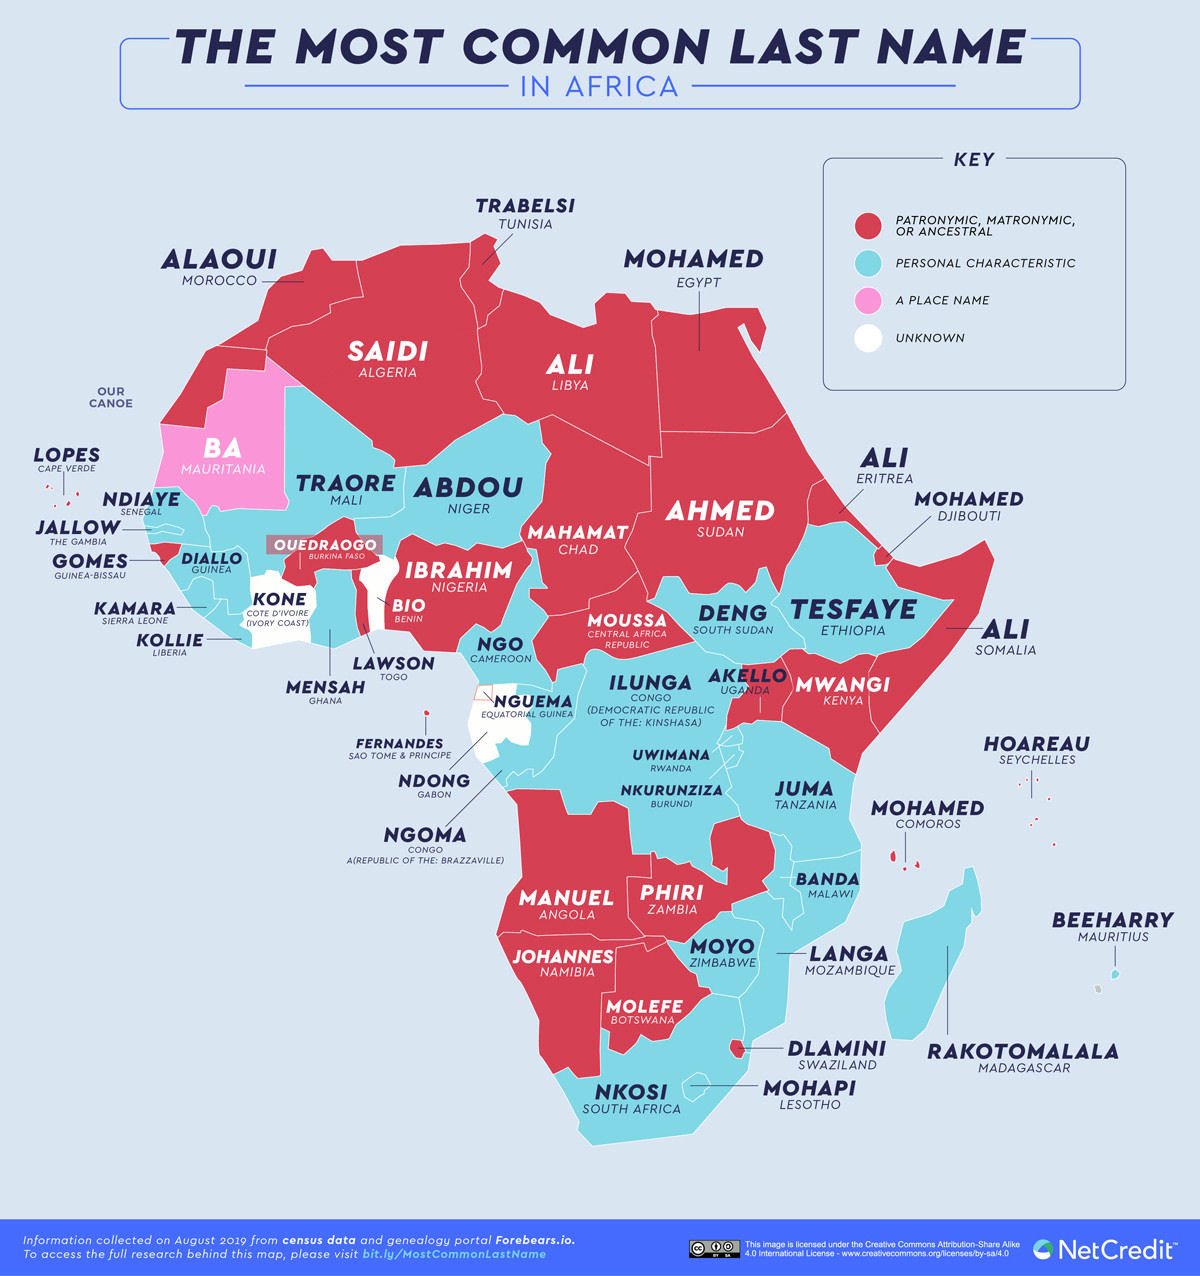 Silva, Gonzalez, Smith, Ivanova: o mapa dos sobrenomes mais comuns em cada pas do mundo